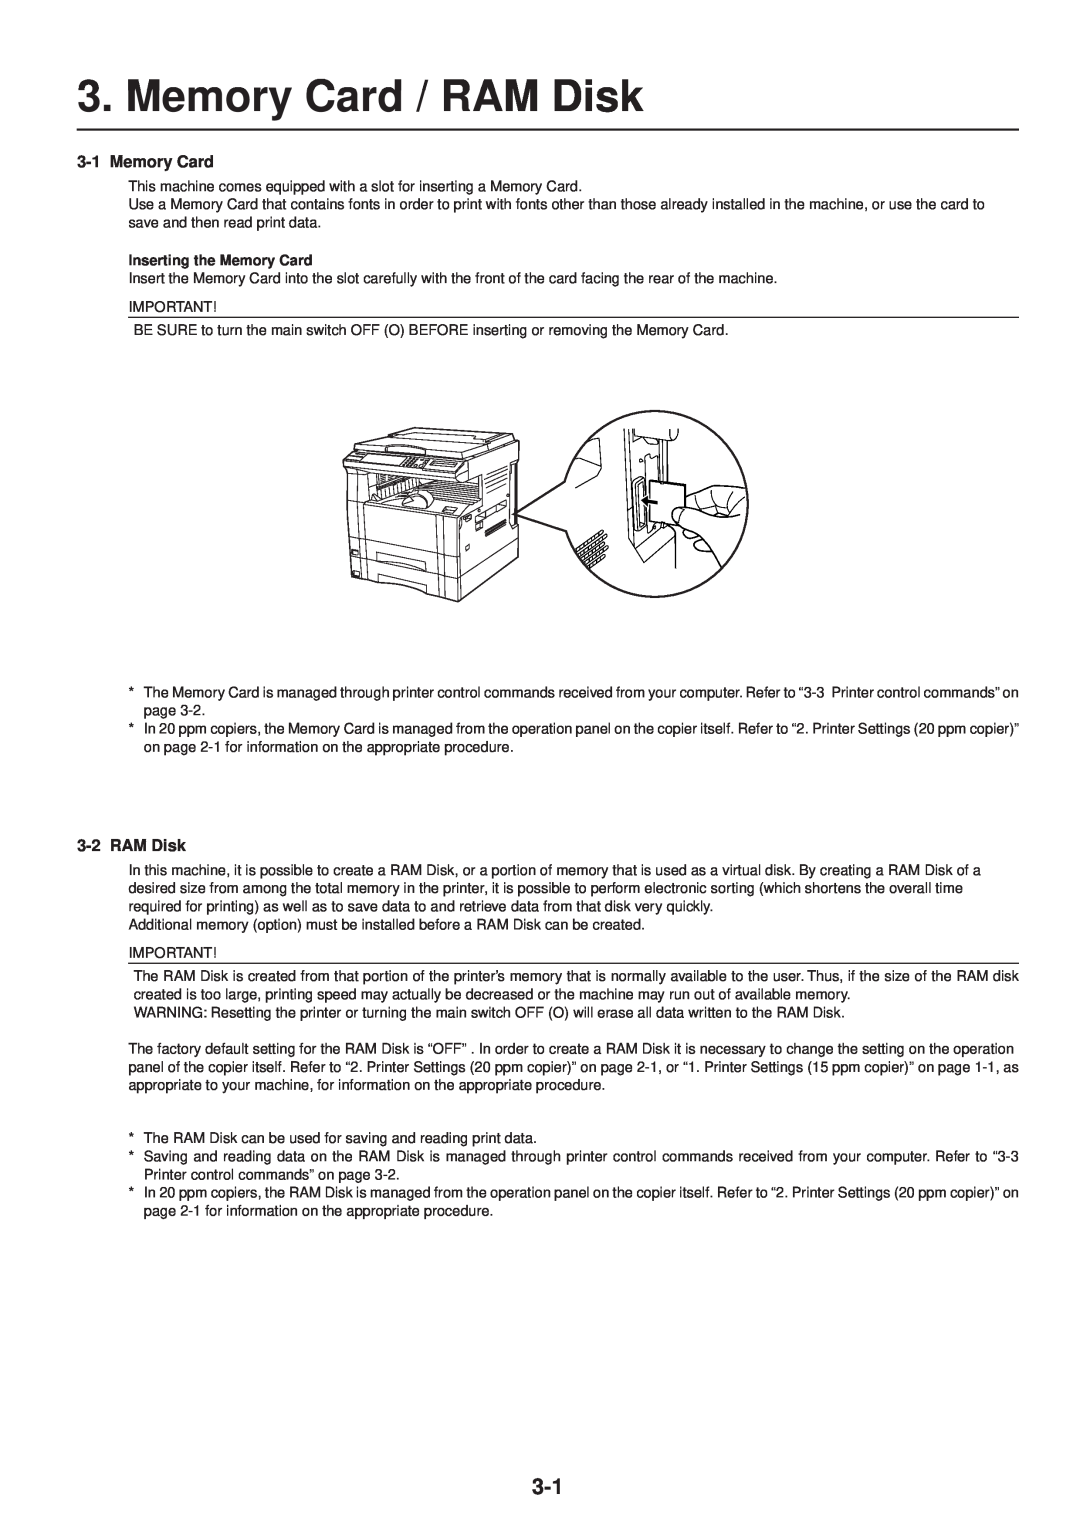 IBM Printing System manual Memory Card / RAM Disk, Inserting the Memory Card 